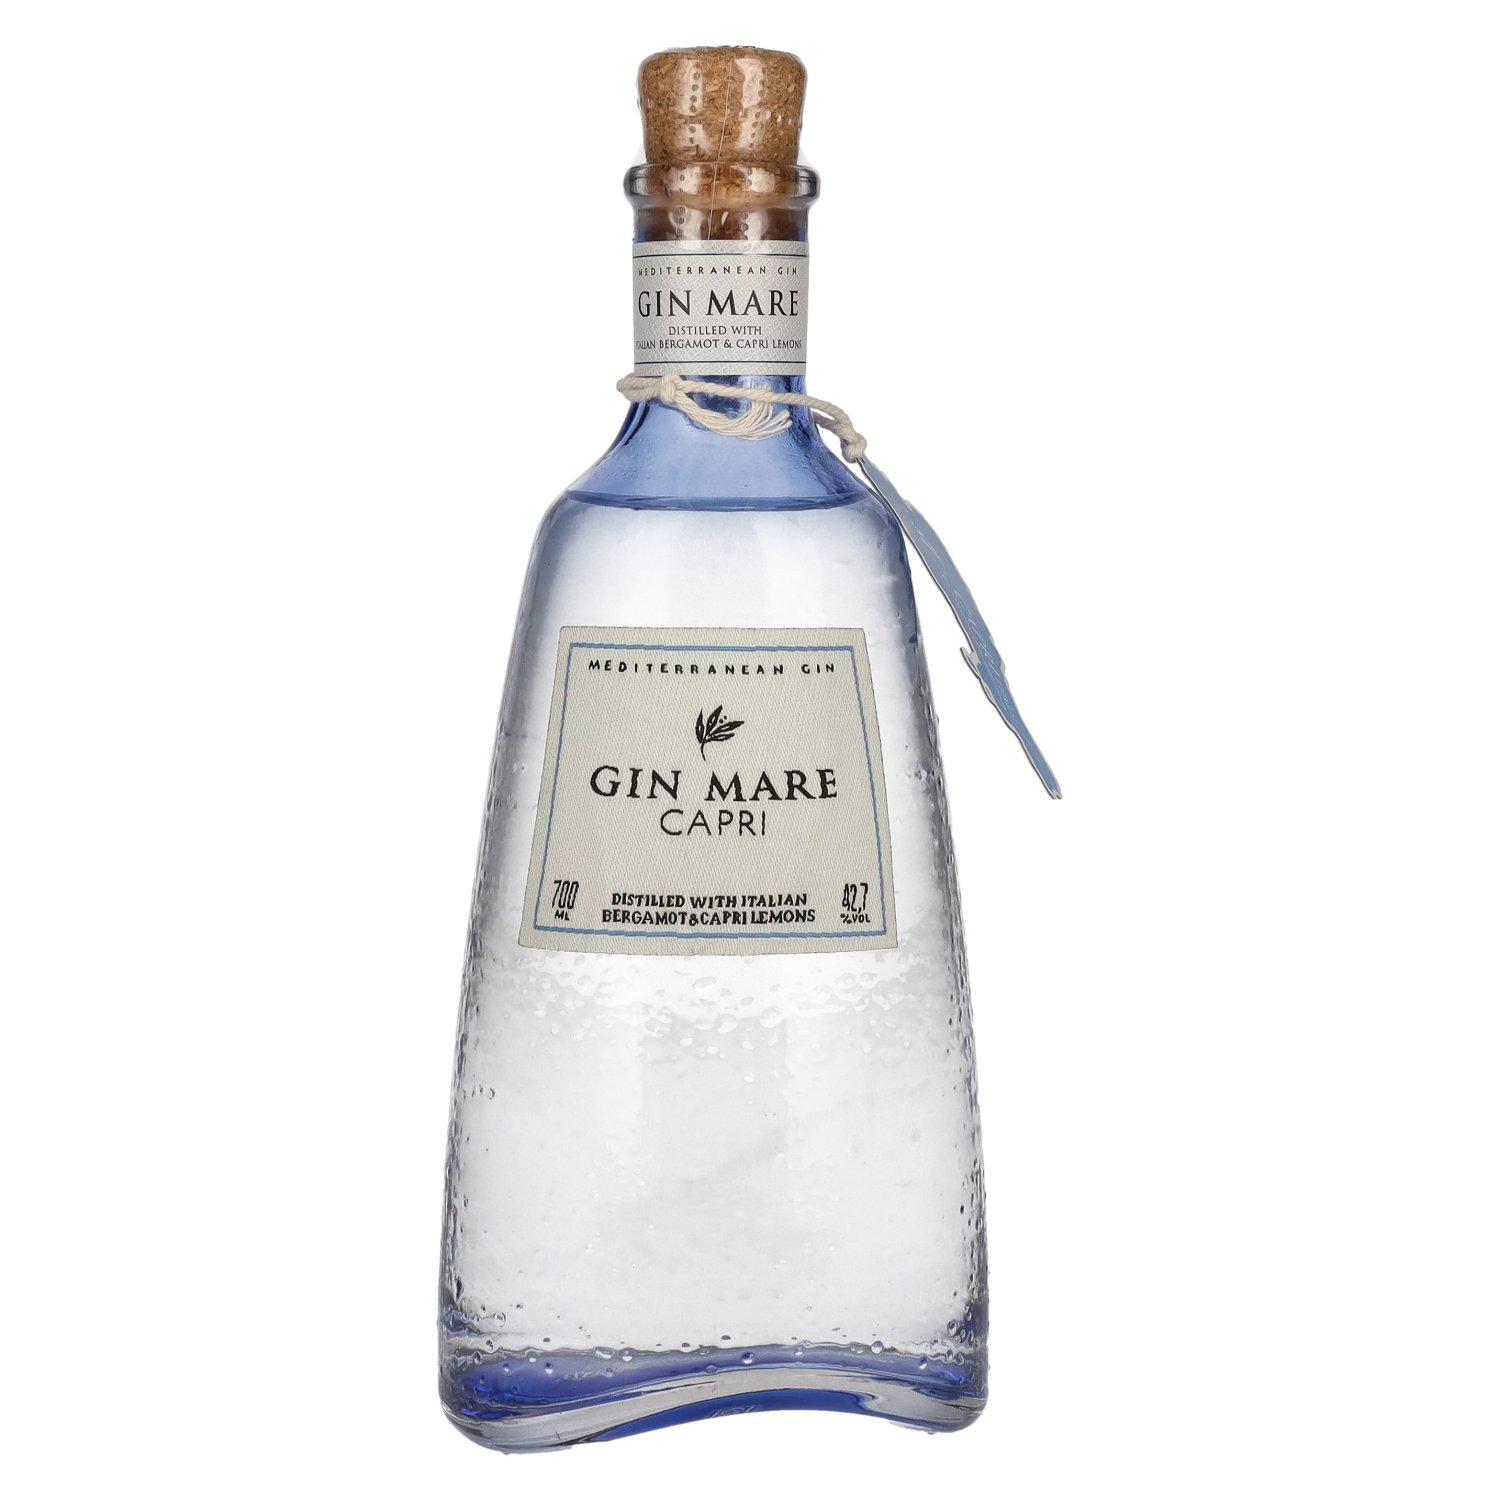 Gin Mare Mediterranean Gin Vol. Capri 0,7l Limited Edition 42,7